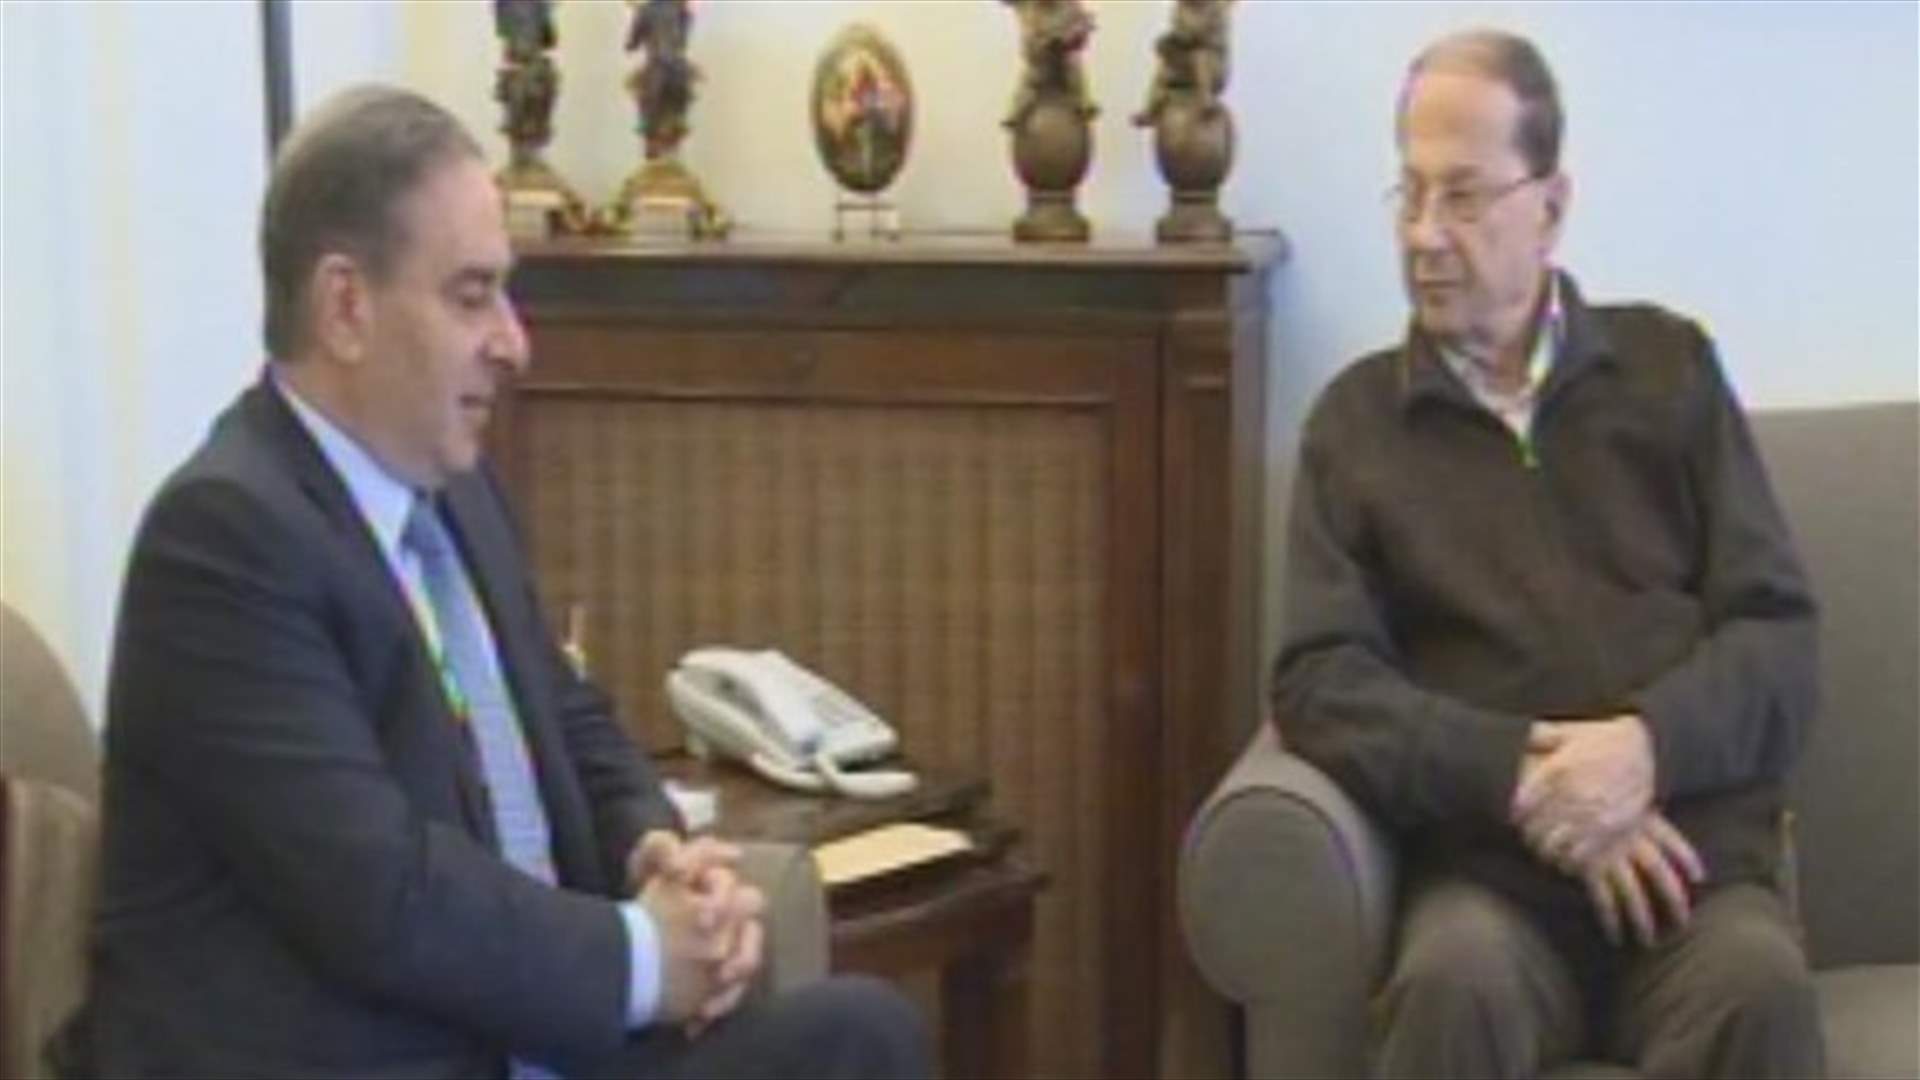 Tourism Minister Faraon meets MP Aoun in Rabieh